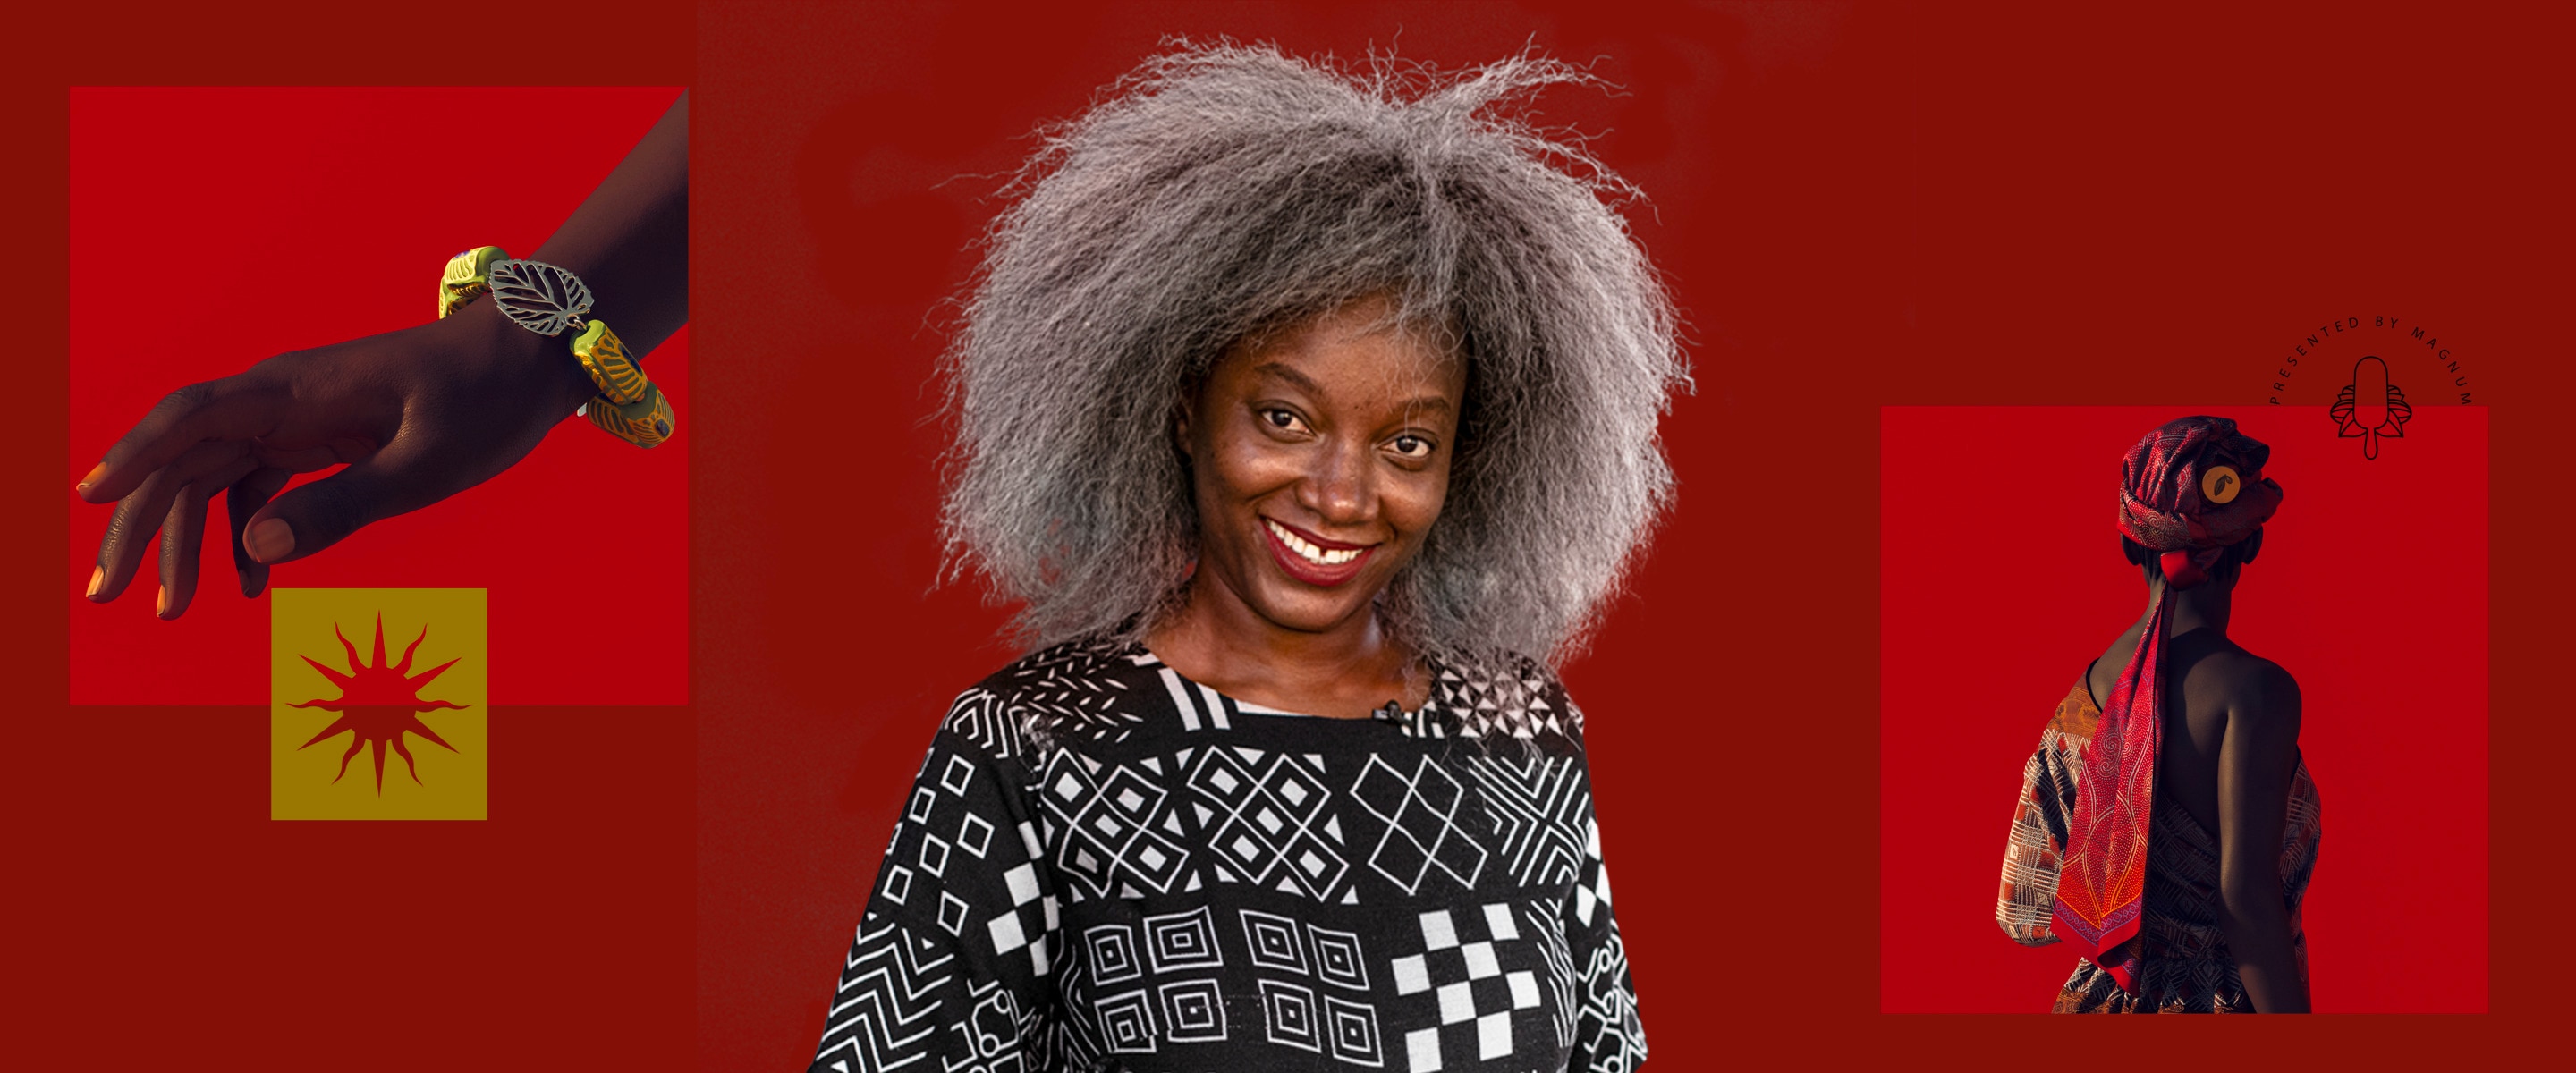 Fotomontage mit der ivorischen Modedesignerin Rebecca Zoro und Teilen ihrer AWA by Magnum Mode-Kollektion auf einem roten Hintergrund